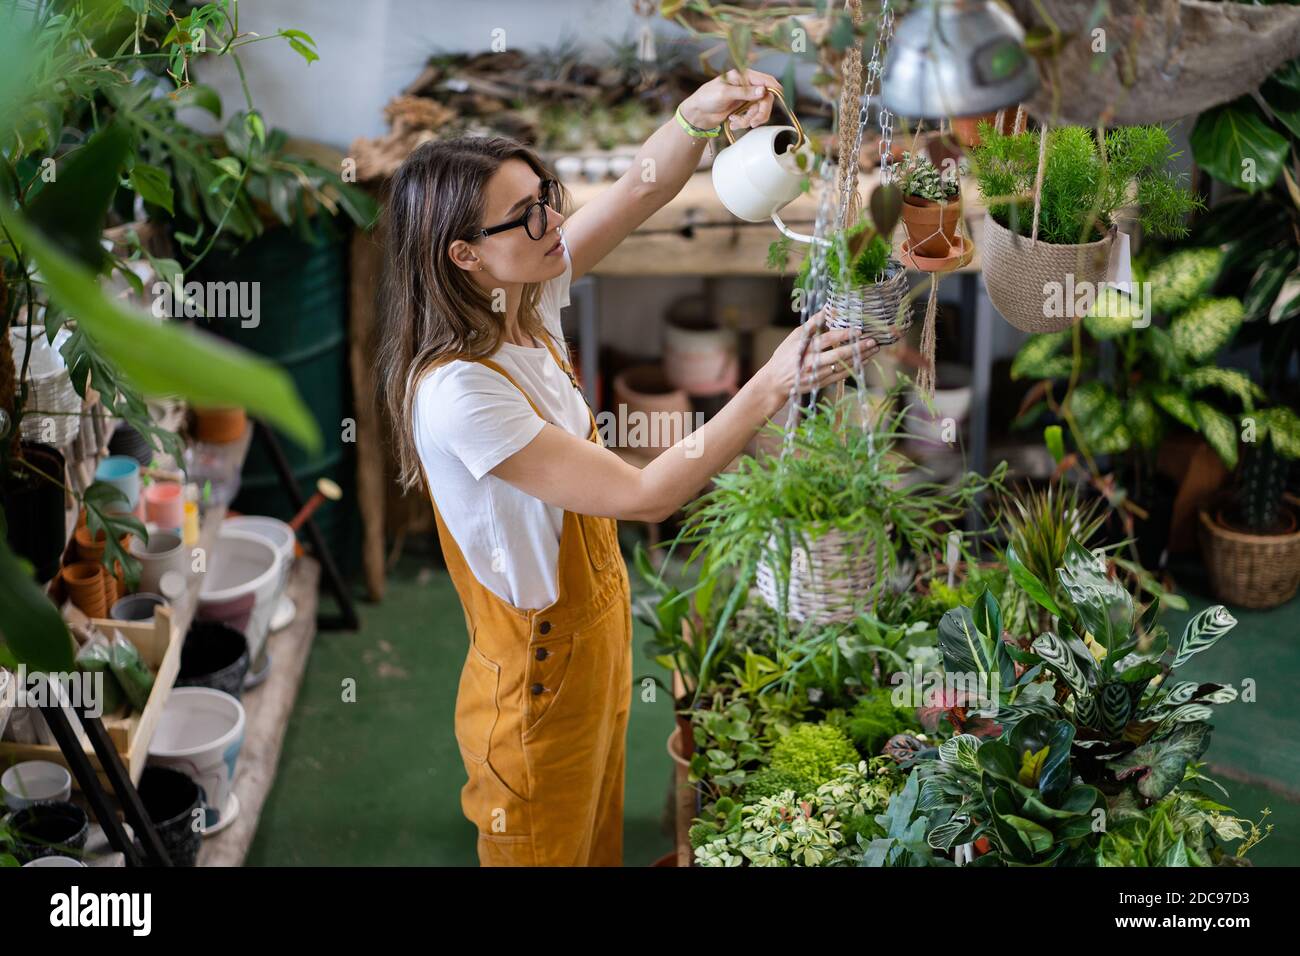 Frau Gärtner in orange Overalls Bewässerung Topfpflanze im Gewächshaus von Pflanzen und Töpfen umgeben, mit weißen Gießkanne Metall. Home Gardeni Stockfoto